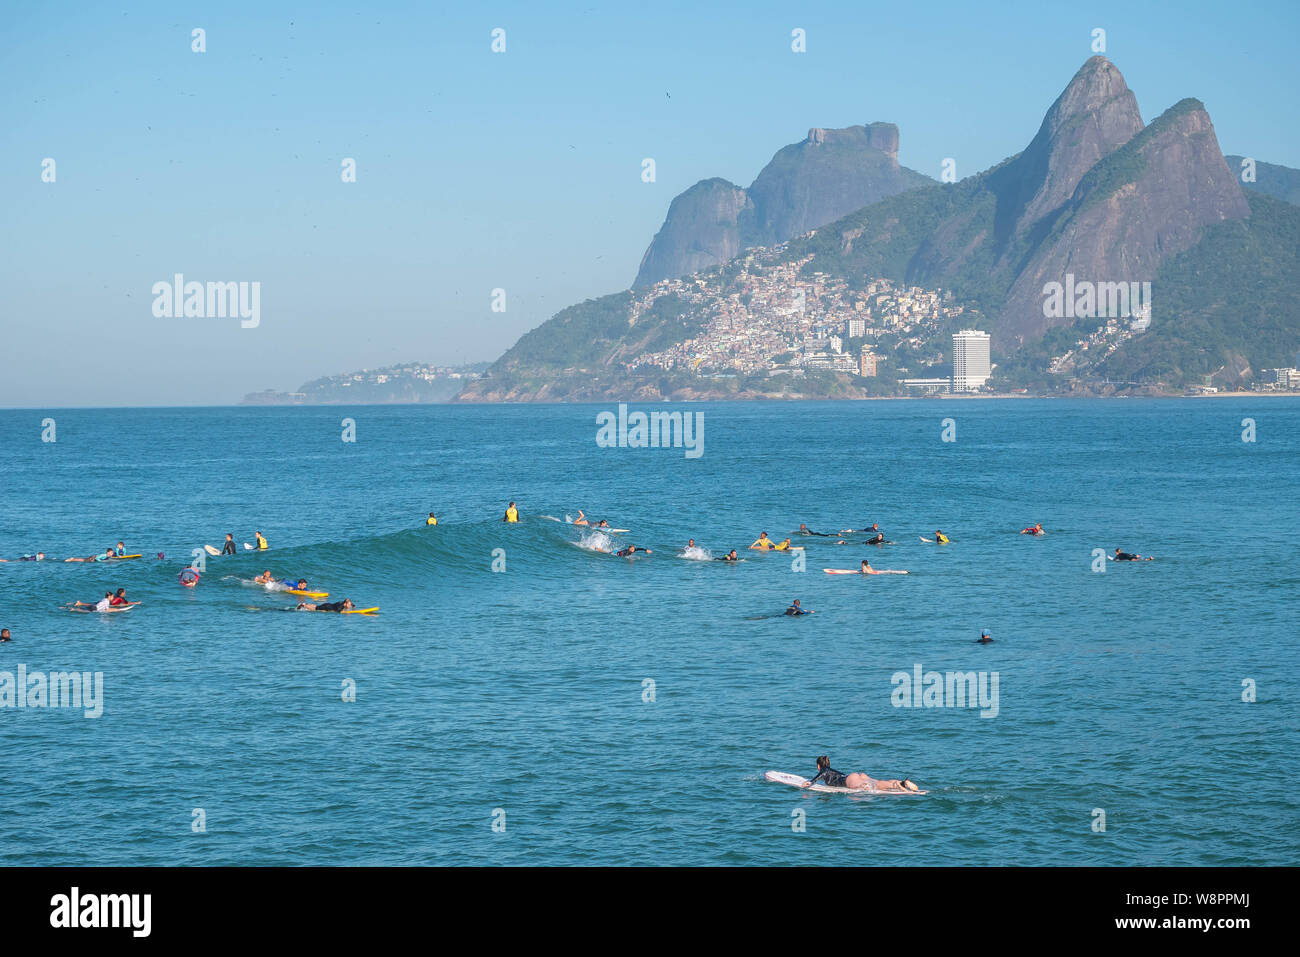 Rio de Janeiro, Brésil - le 10 août 2019 : la plage d'Ipanema et d'Arpoador avec surfeurs amateurs en attente de vagues sur les eaux bleues et les montagnes en zone Banque D'Images